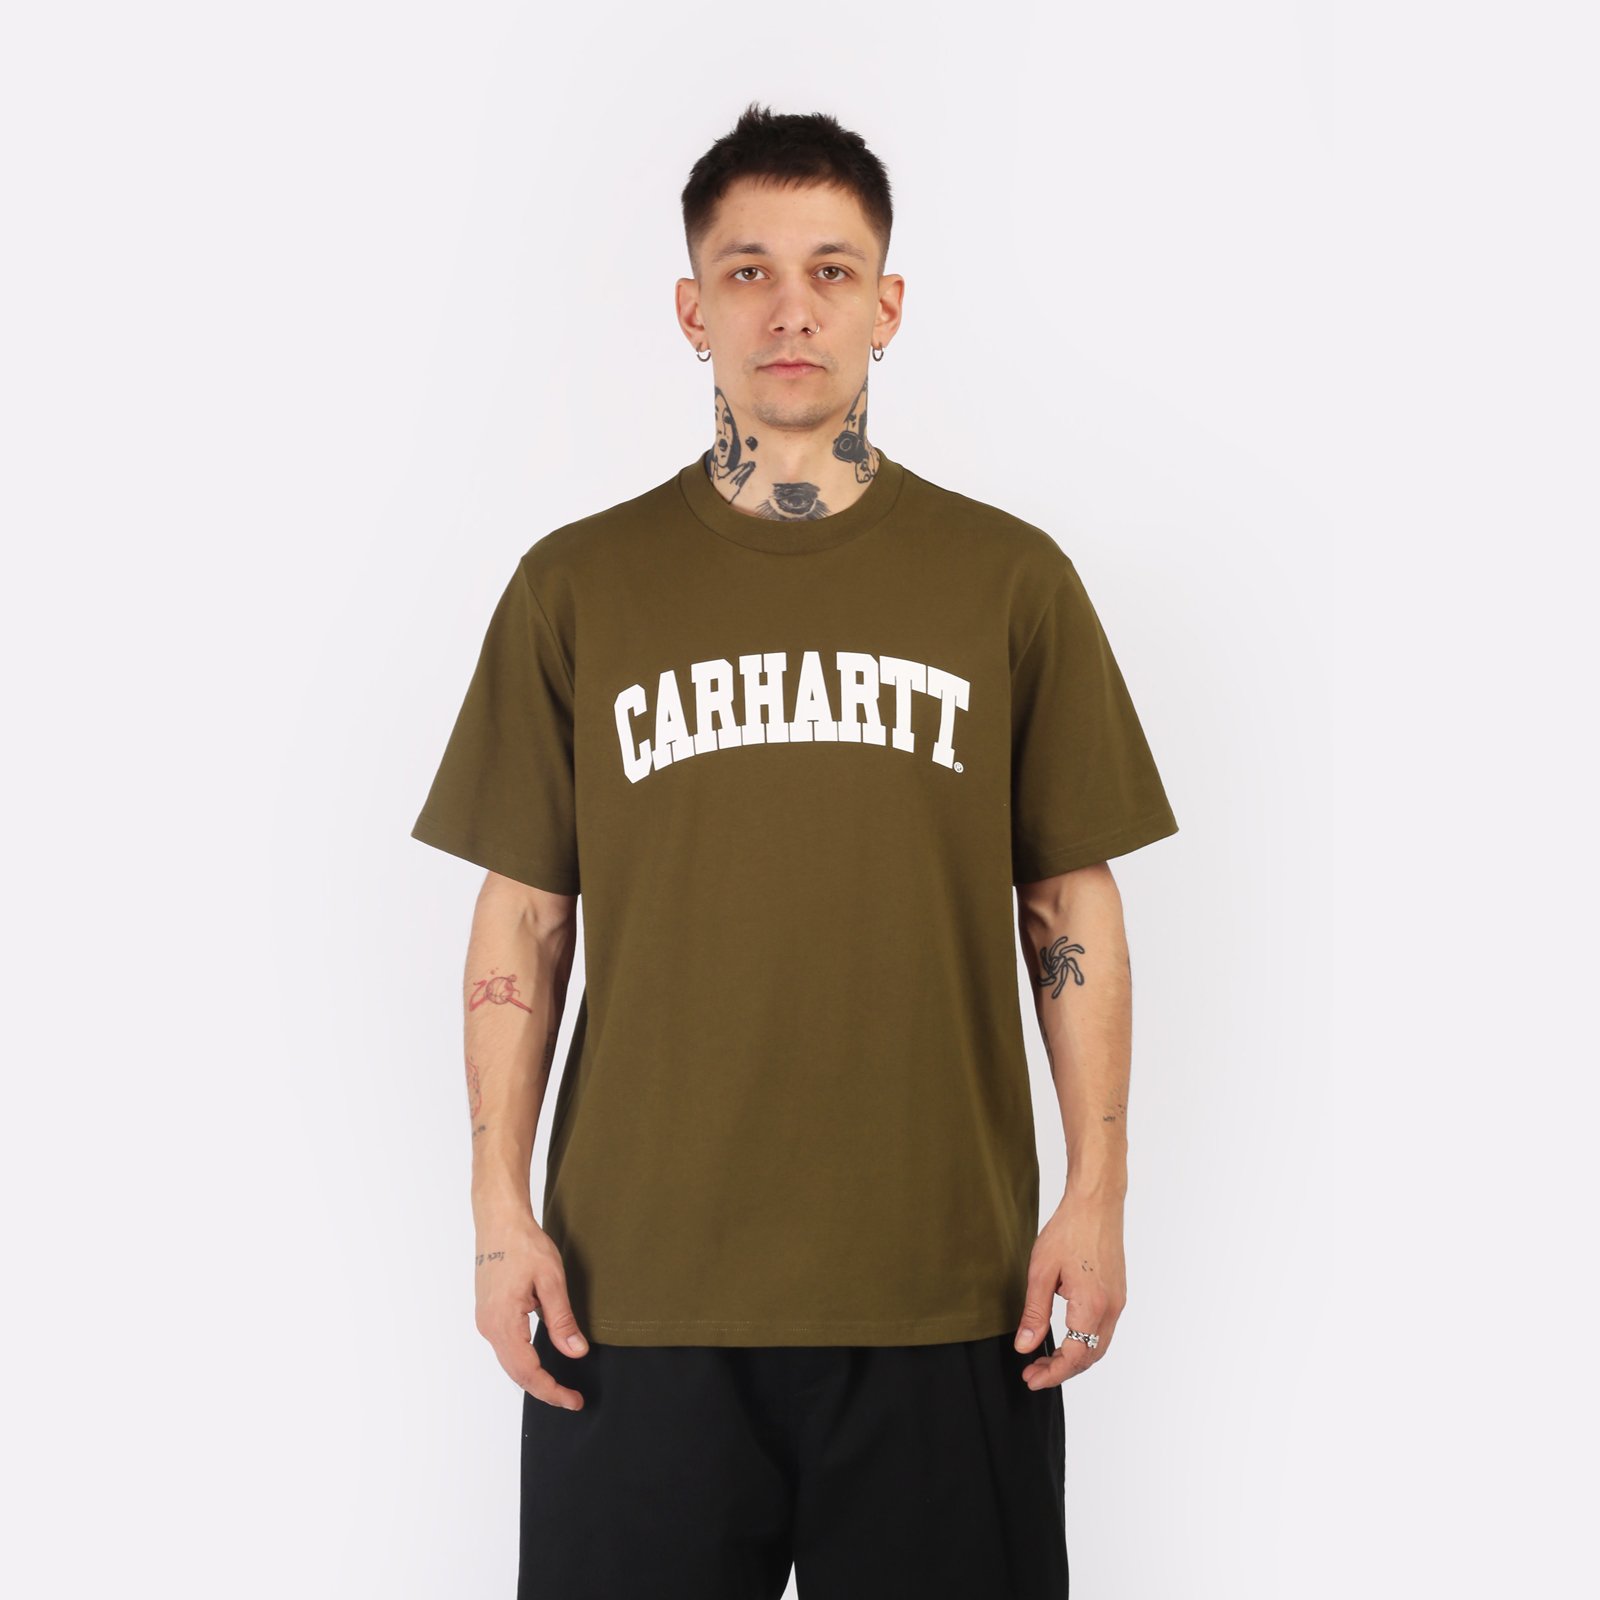 мужская футболка Carhartt WIP S/S University T-Shirt  (I028990-lumber/white)  - цена, описание, фото 1